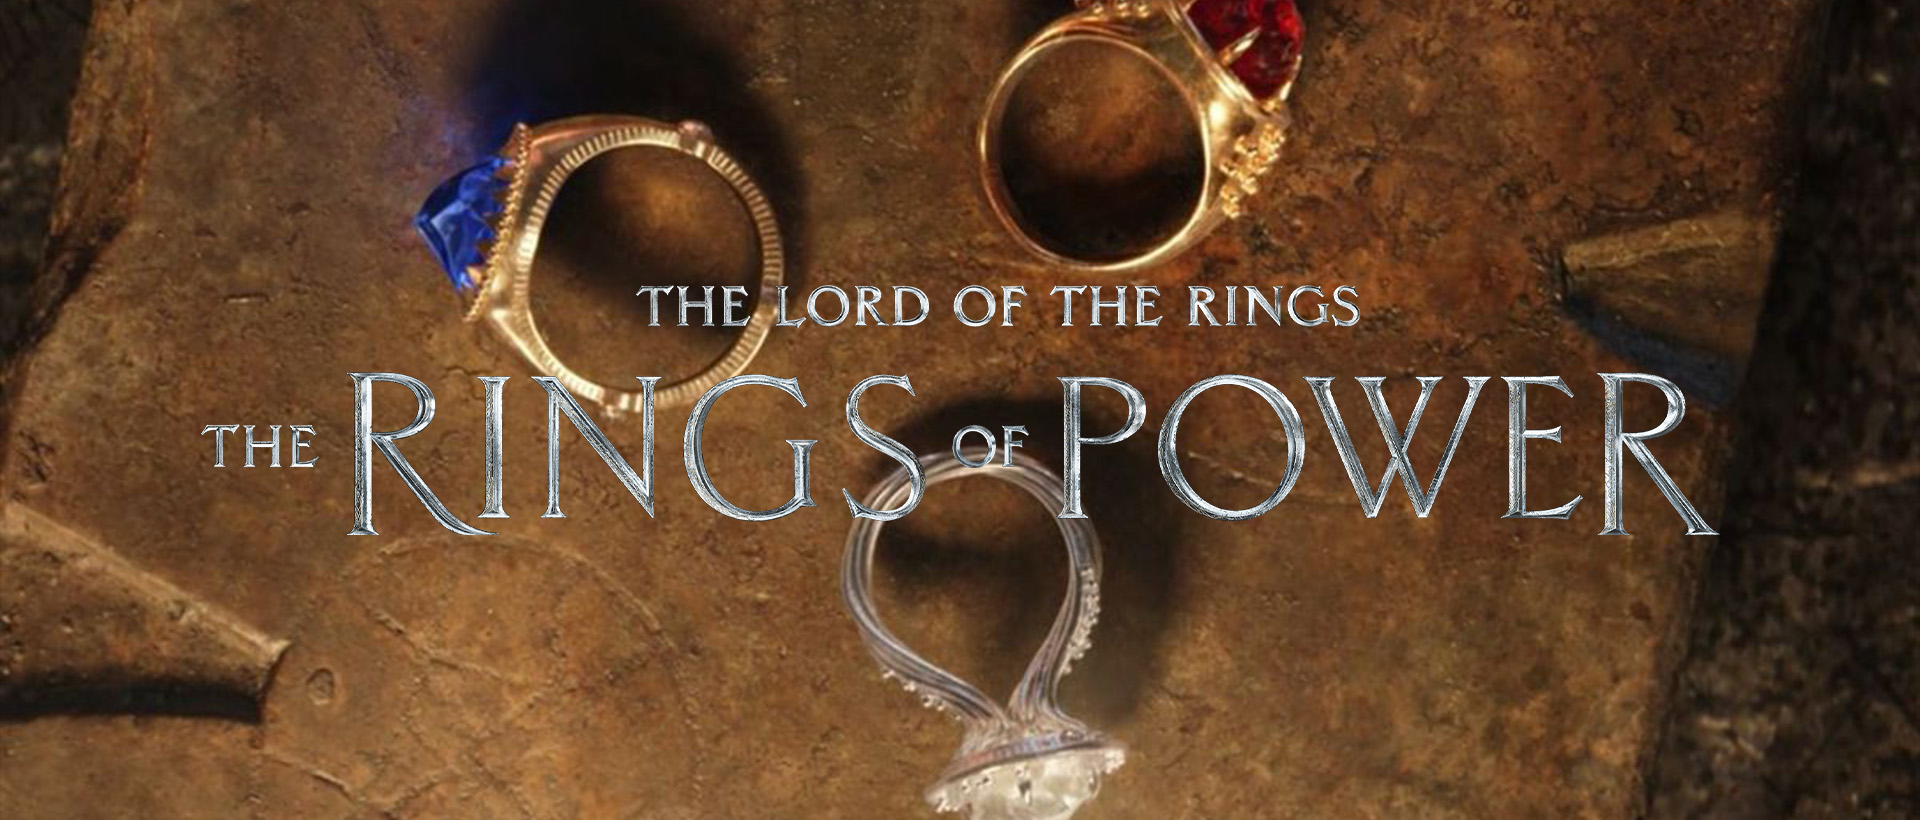 lotr rings of power 3 rings banner